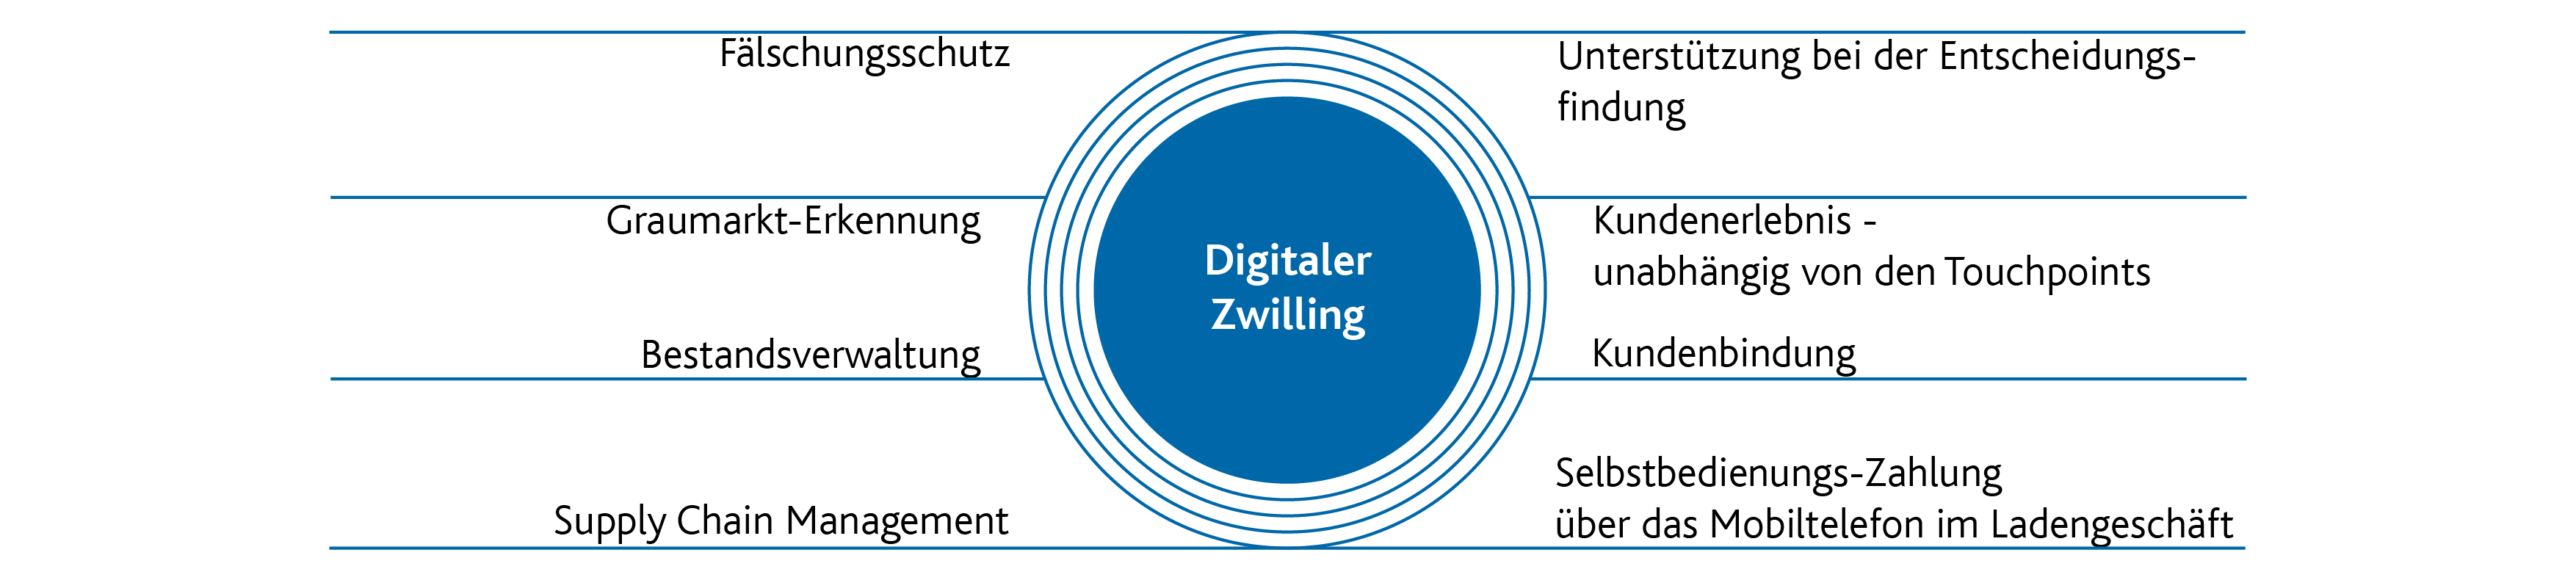 20210628_DigitalTwin_Grafik_DE